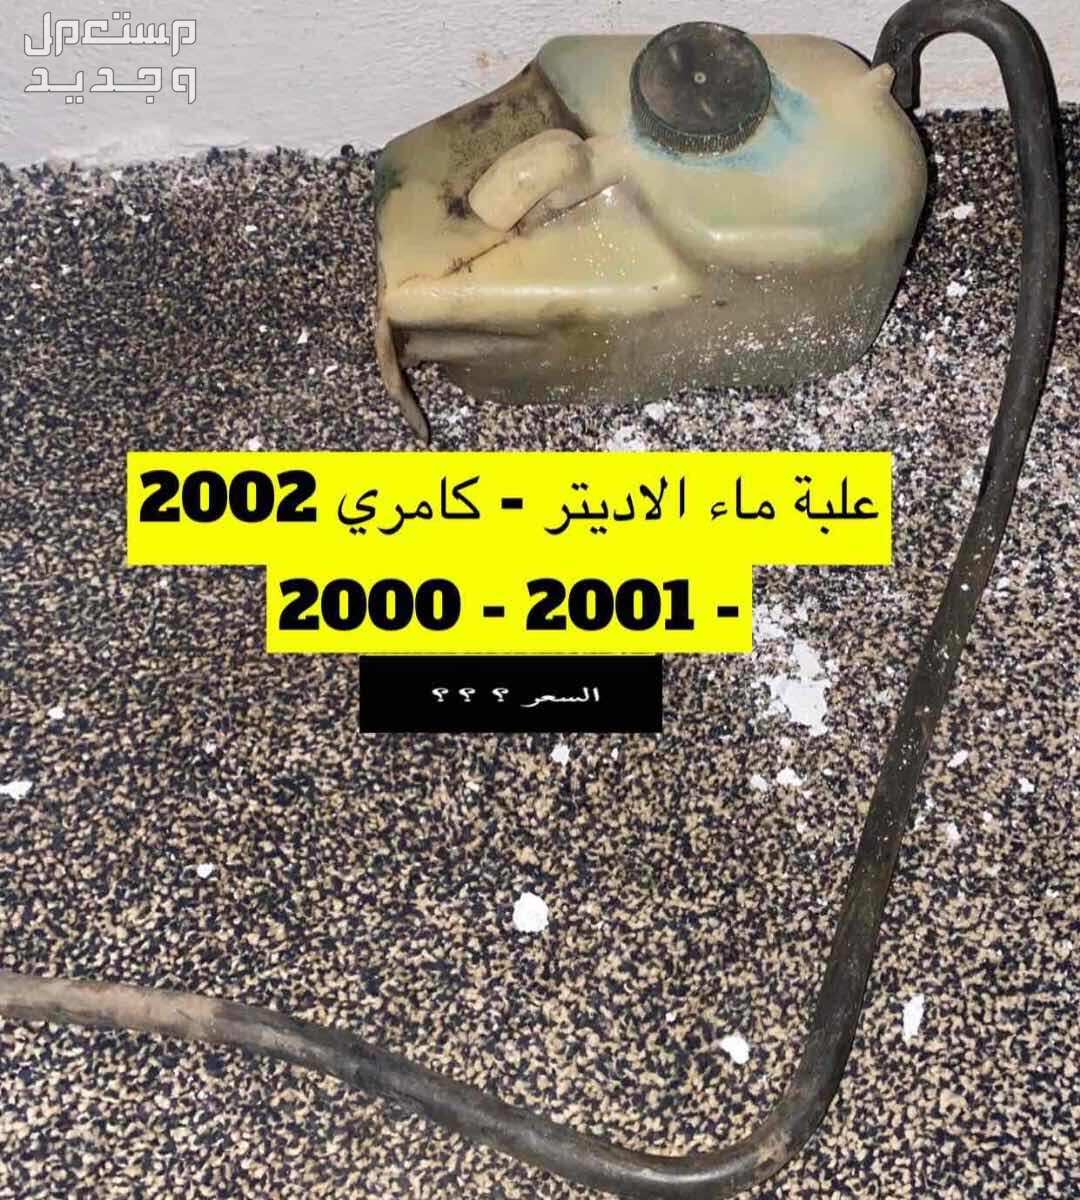 قطع غيار كامري 2002 عايدي سعودي(مستخدم)2